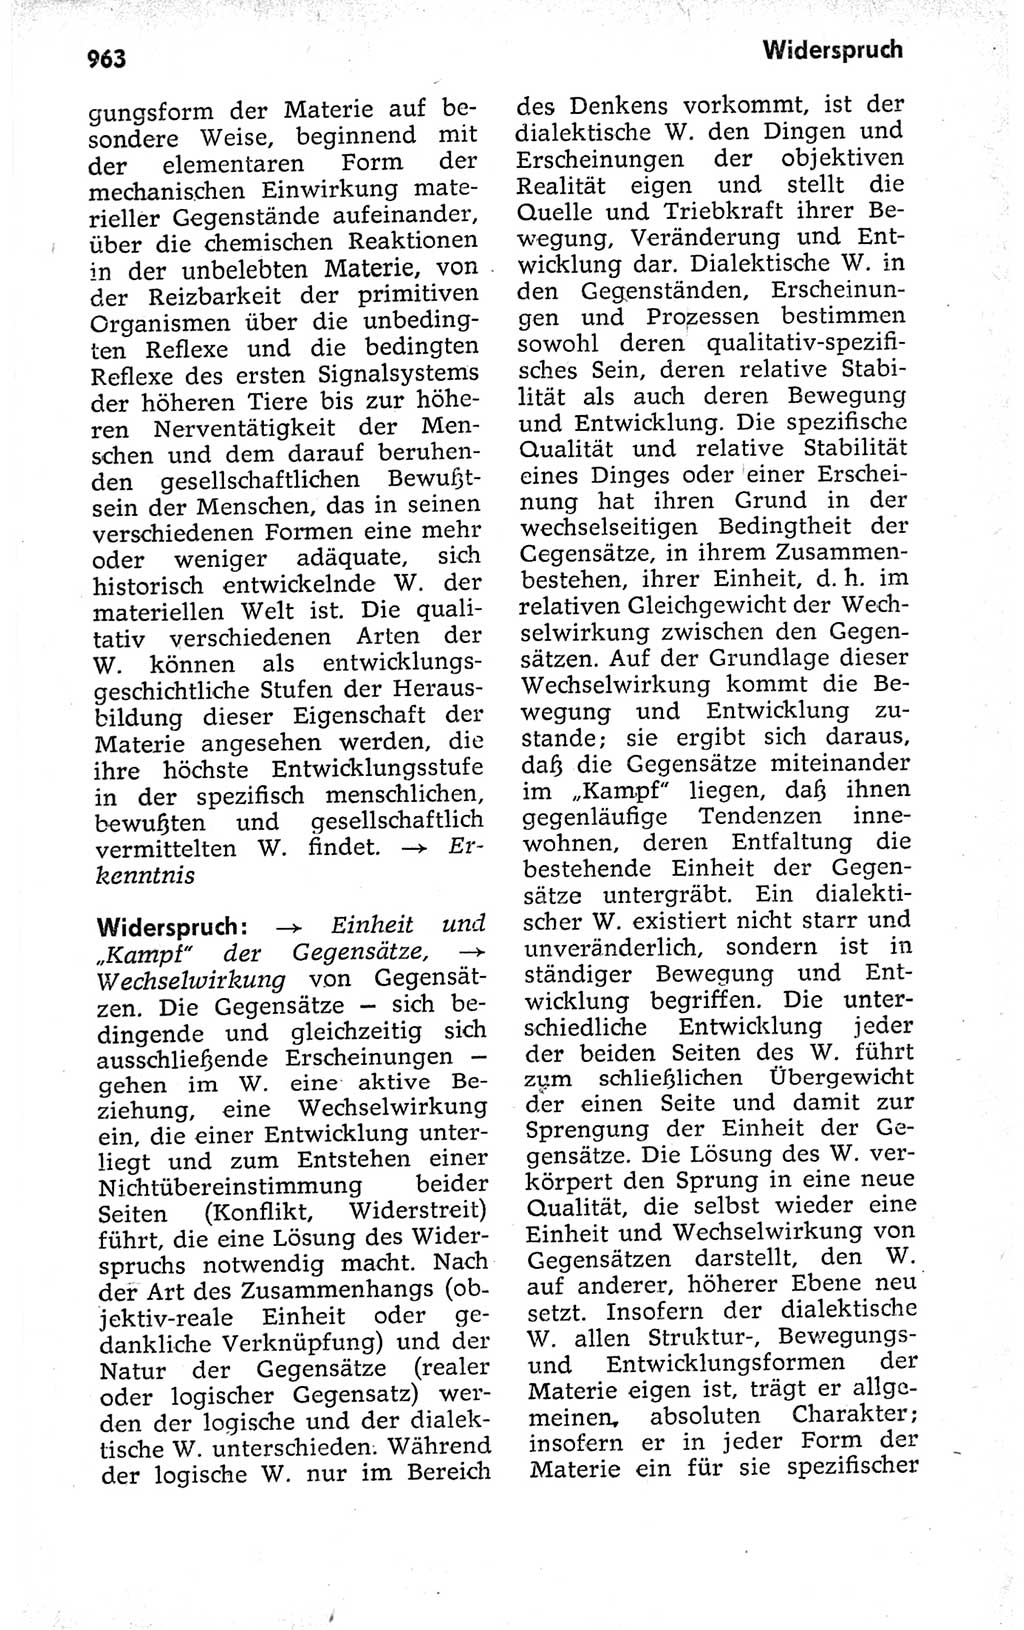 Kleines politisches Wörterbuch [Deutsche Demokratische Republik (DDR)] 1973, Seite 963 (Kl. pol. Wb. DDR 1973, S. 963)